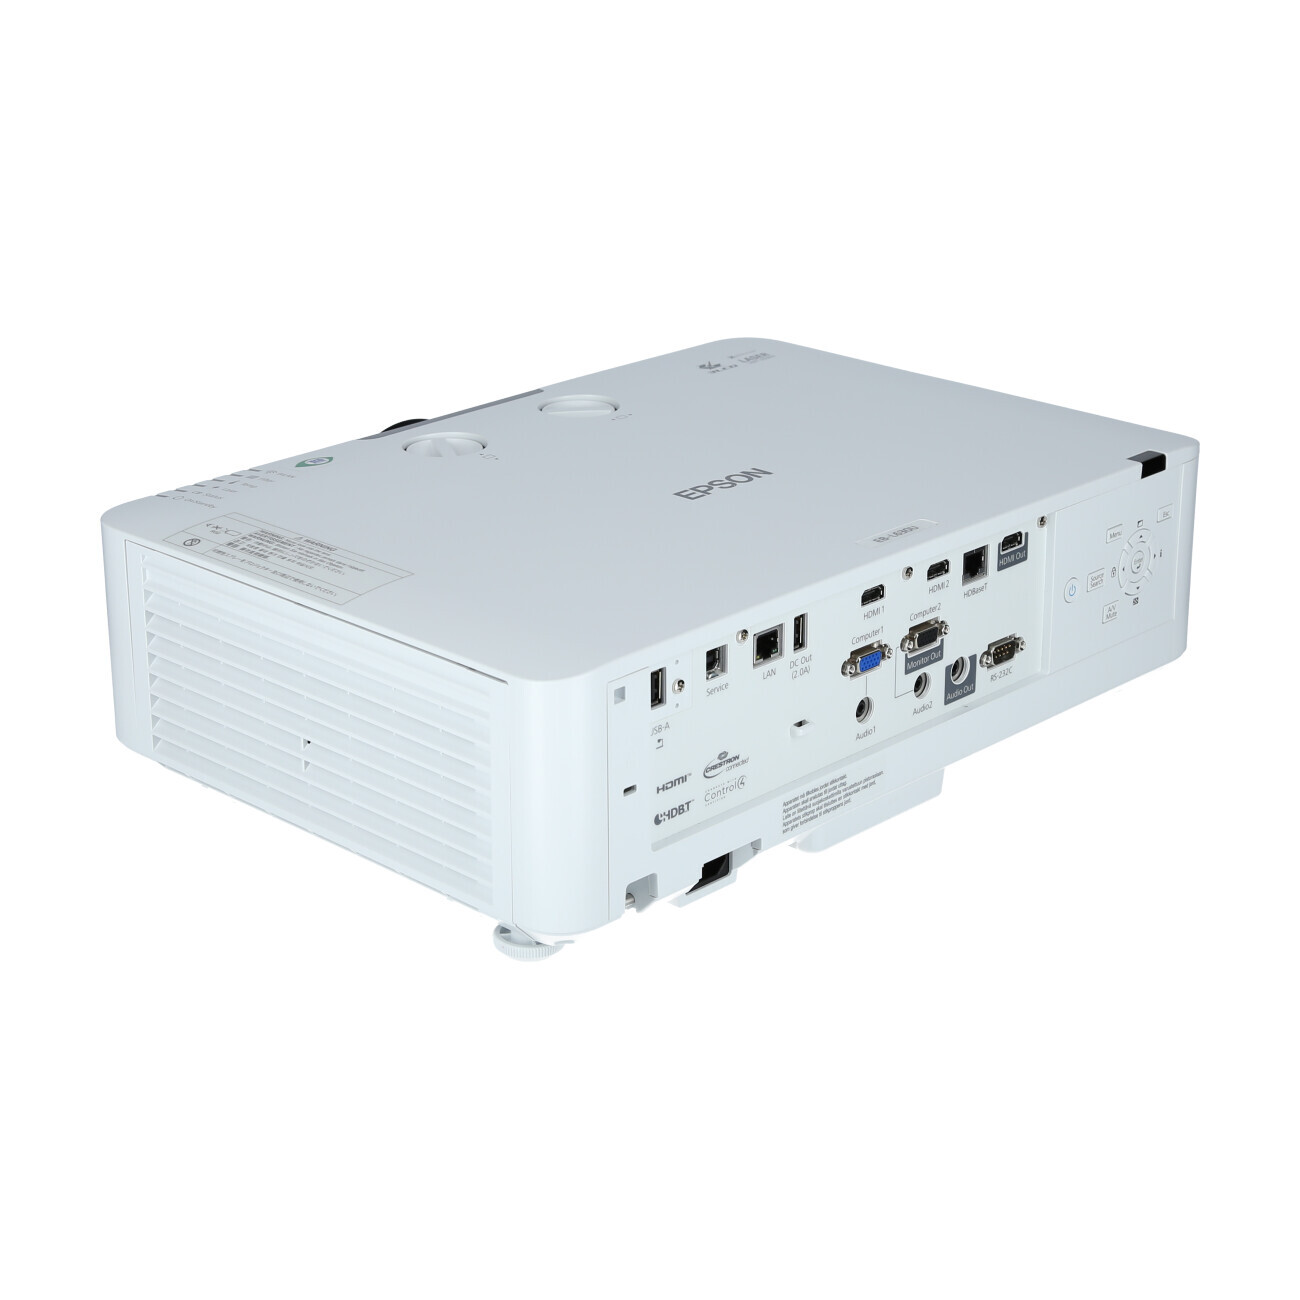 Vorschau: Epson EB-L630U weiß Laser-Beamer mit 6200 ANSI-Lumen und WUXGA Auflösung